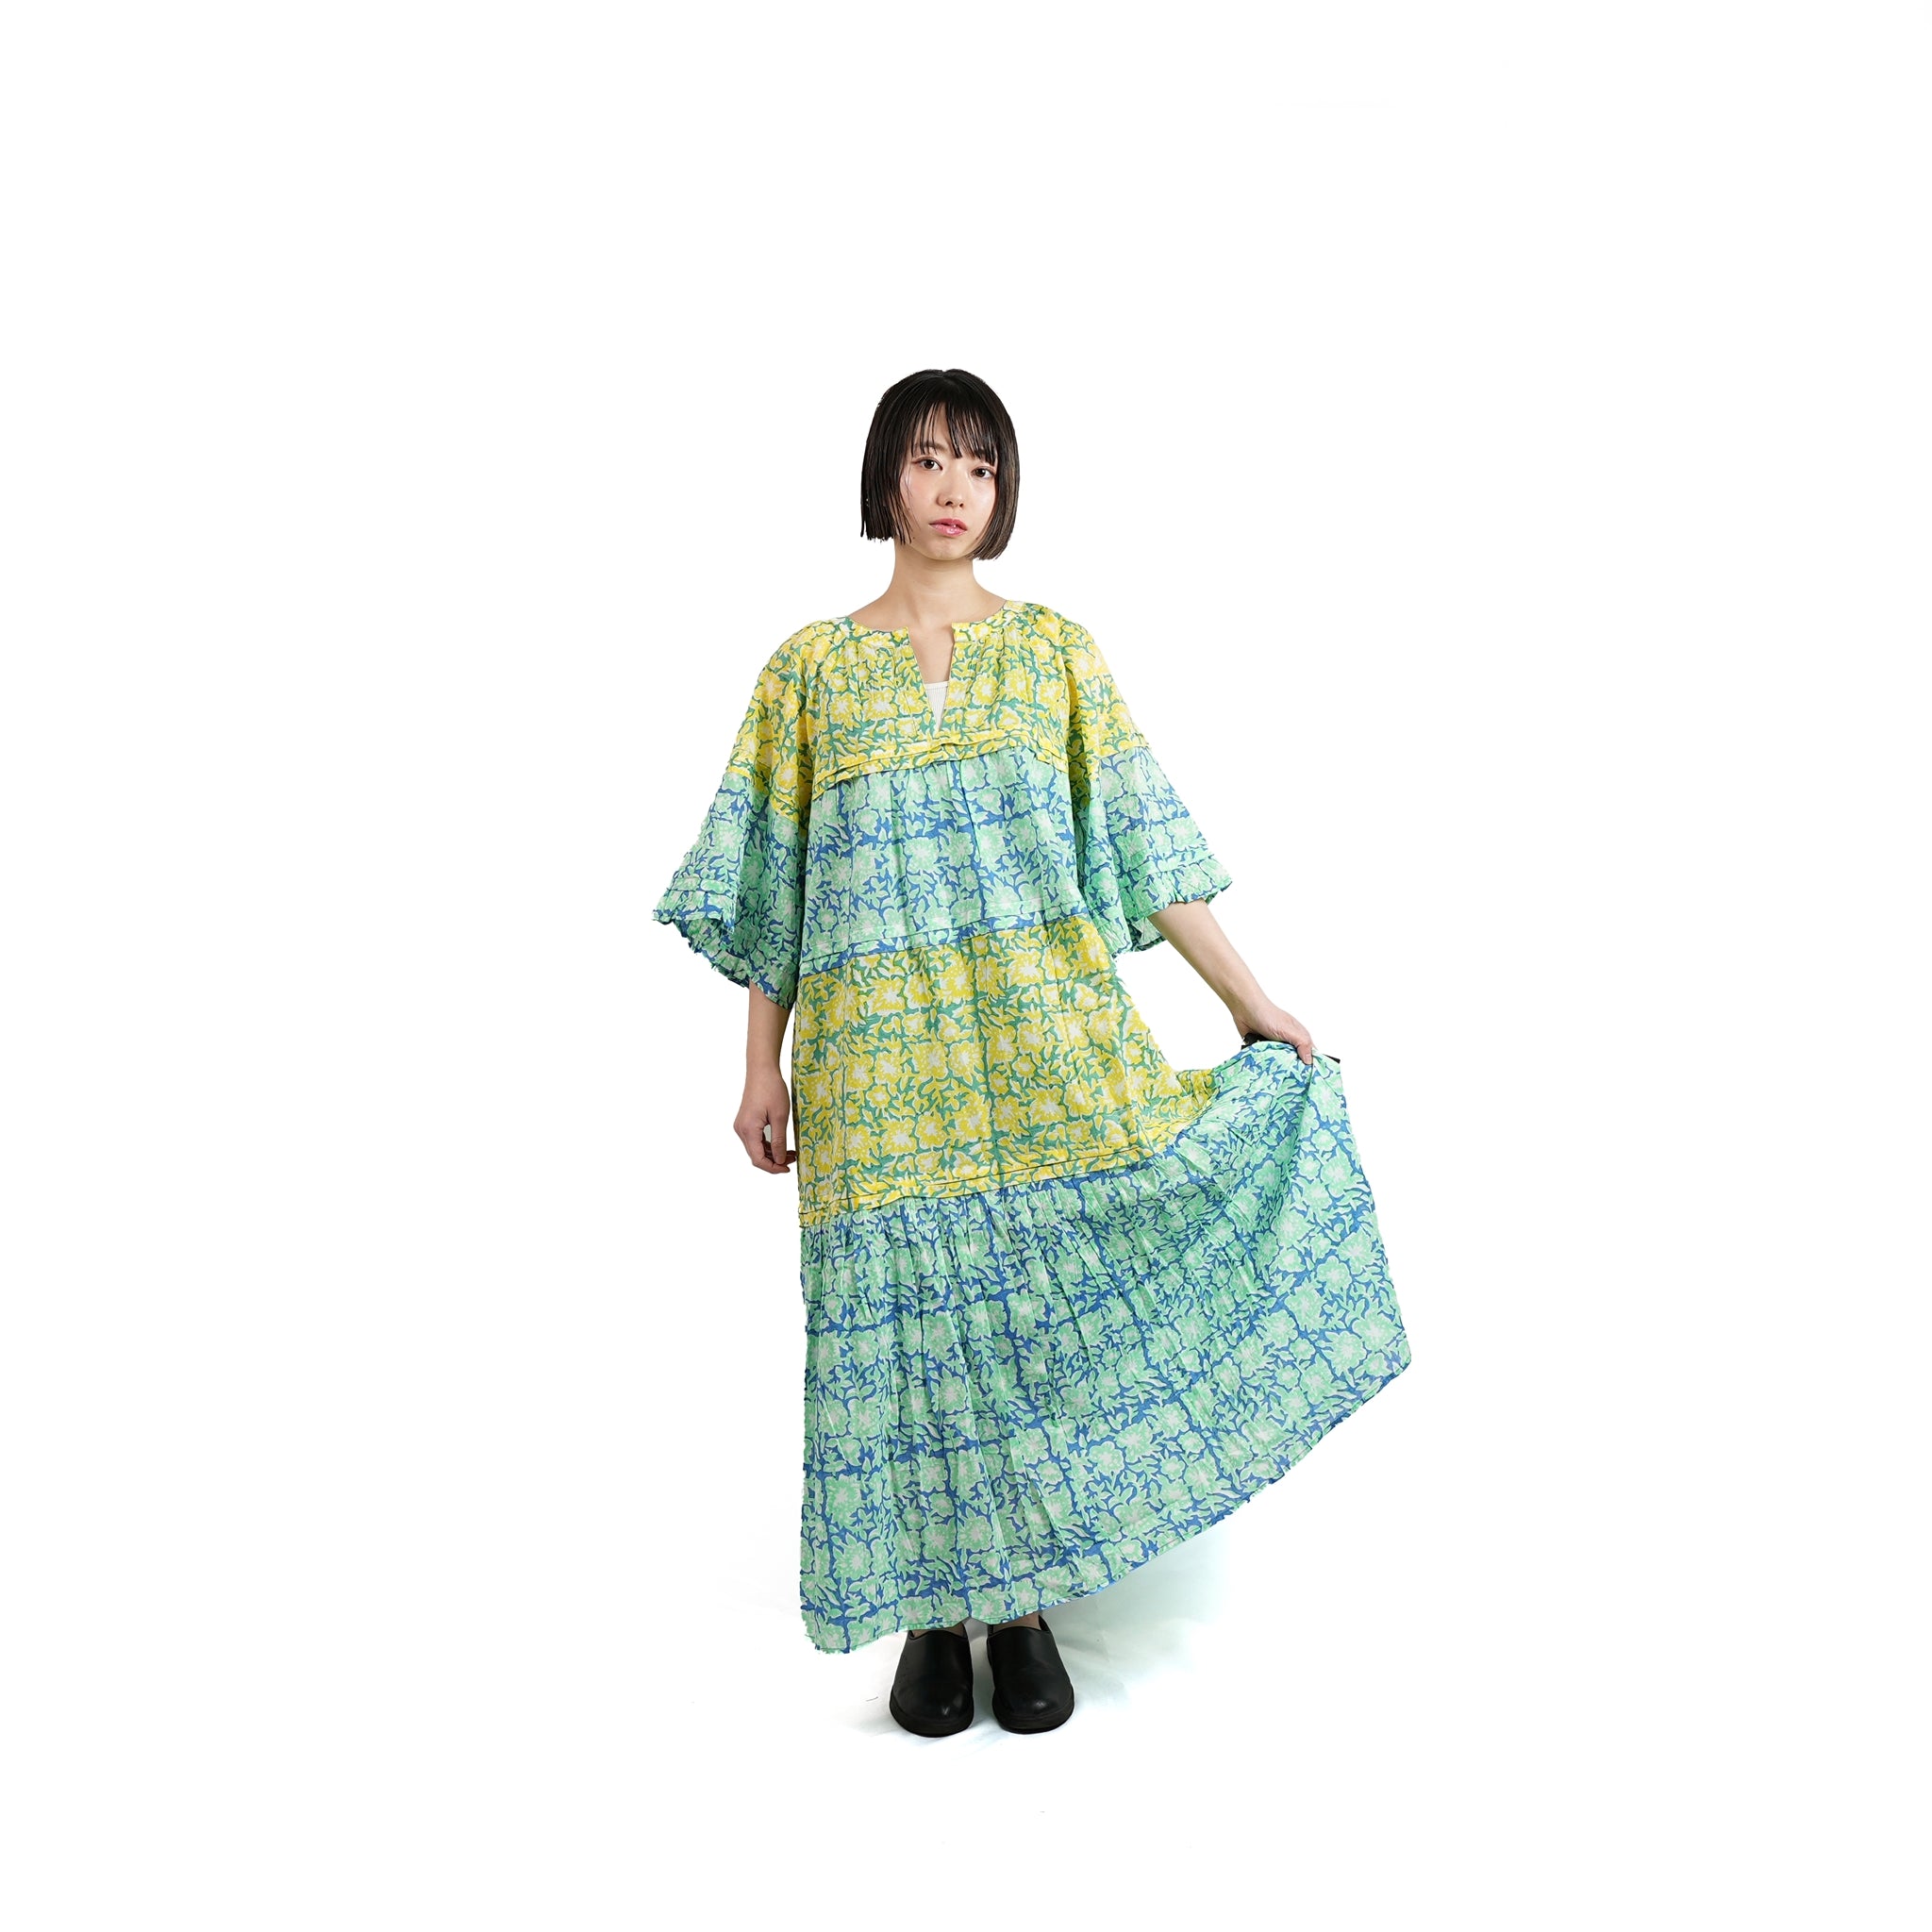 No:020432SA1b | Name:COTTON FLOWER PATCHWORK DRESS | Color:Ecru